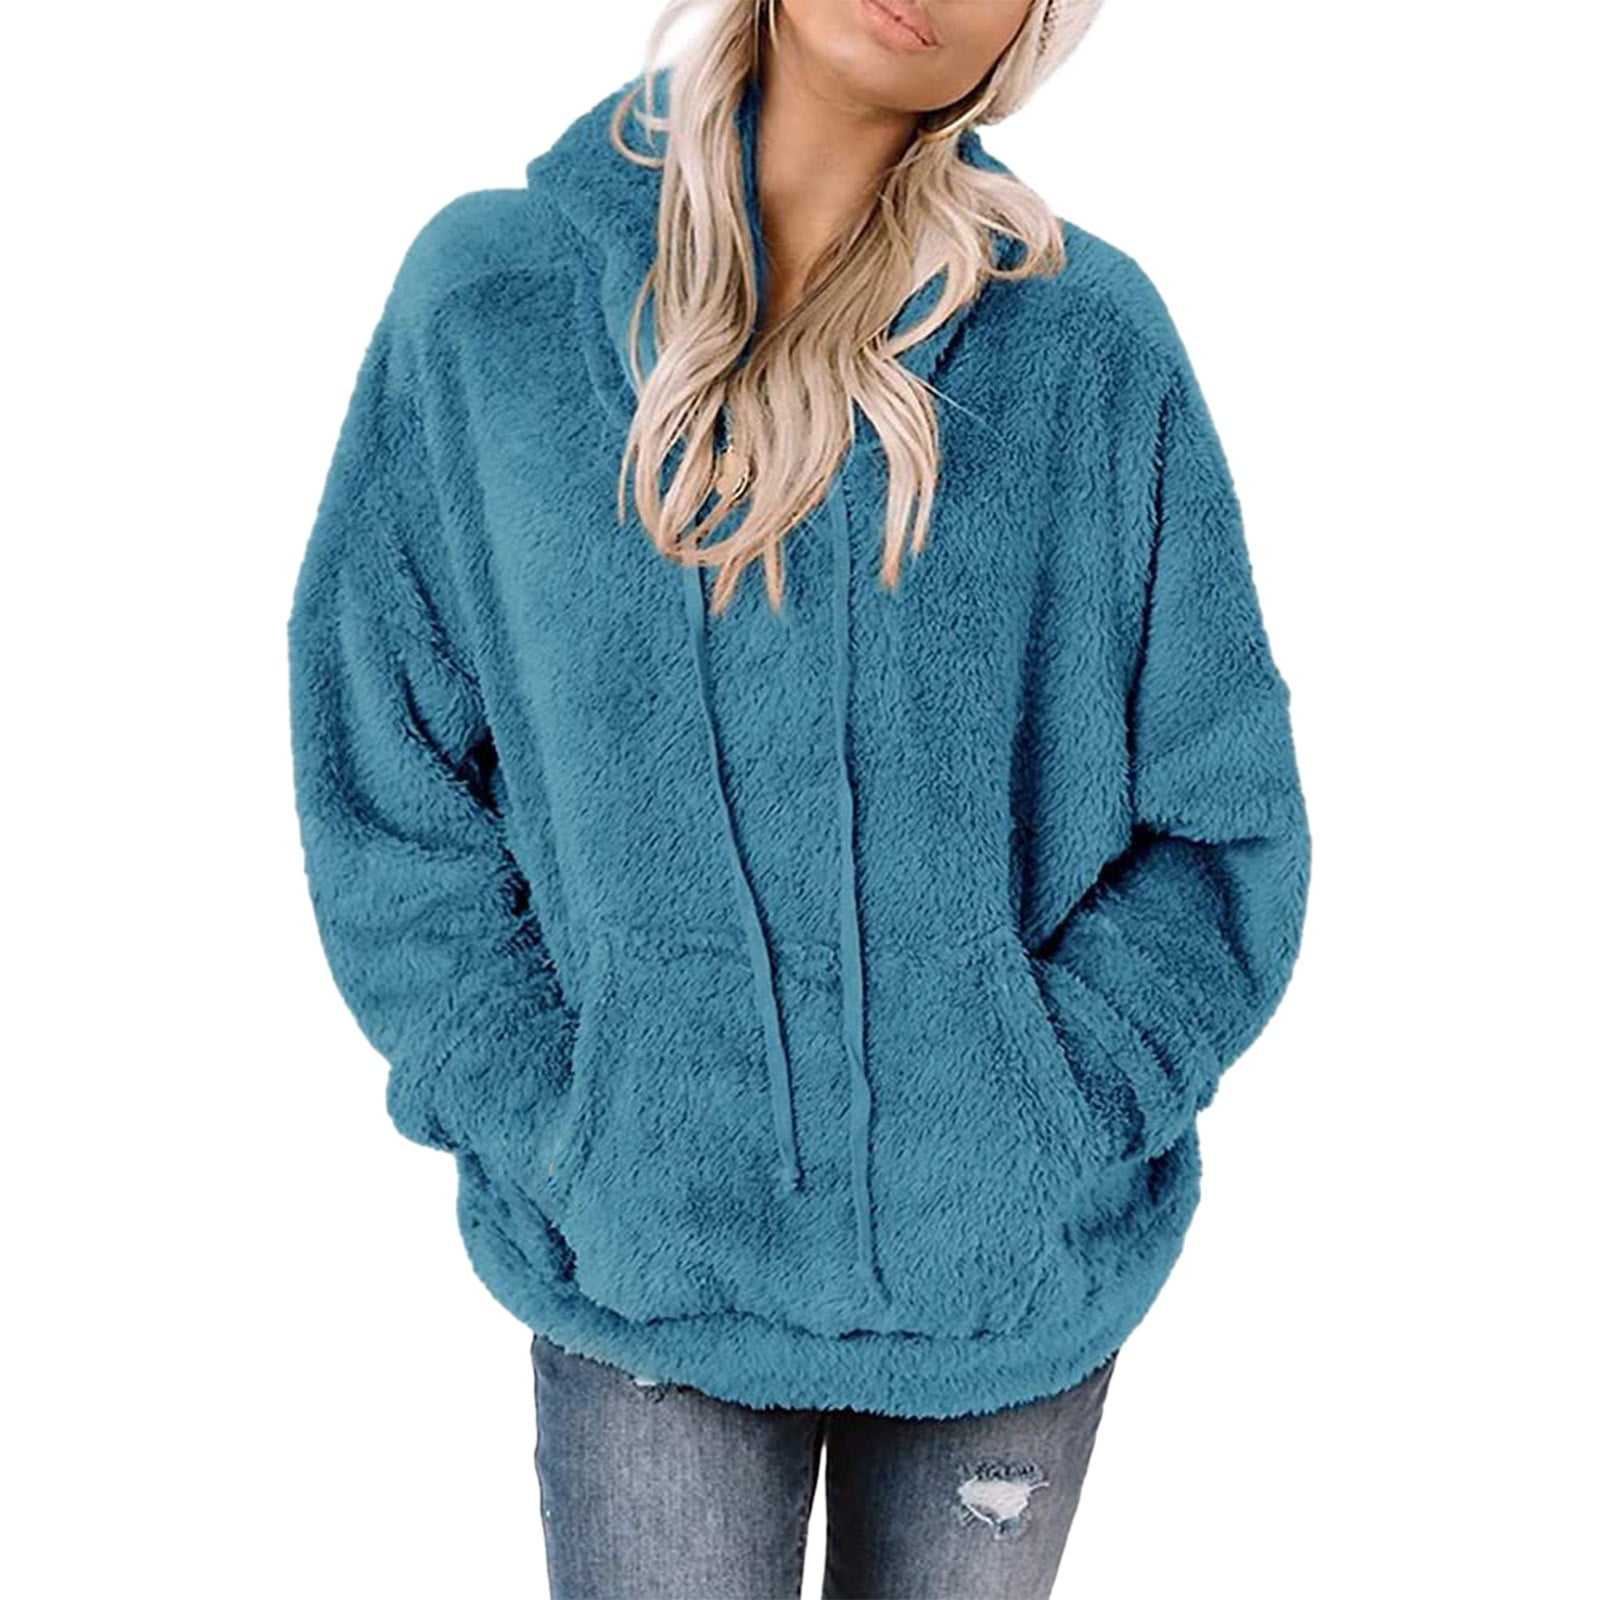 Dtydtpe Women's Long Sleeve Sherpa Pullover Fuzzy Sweatshirt